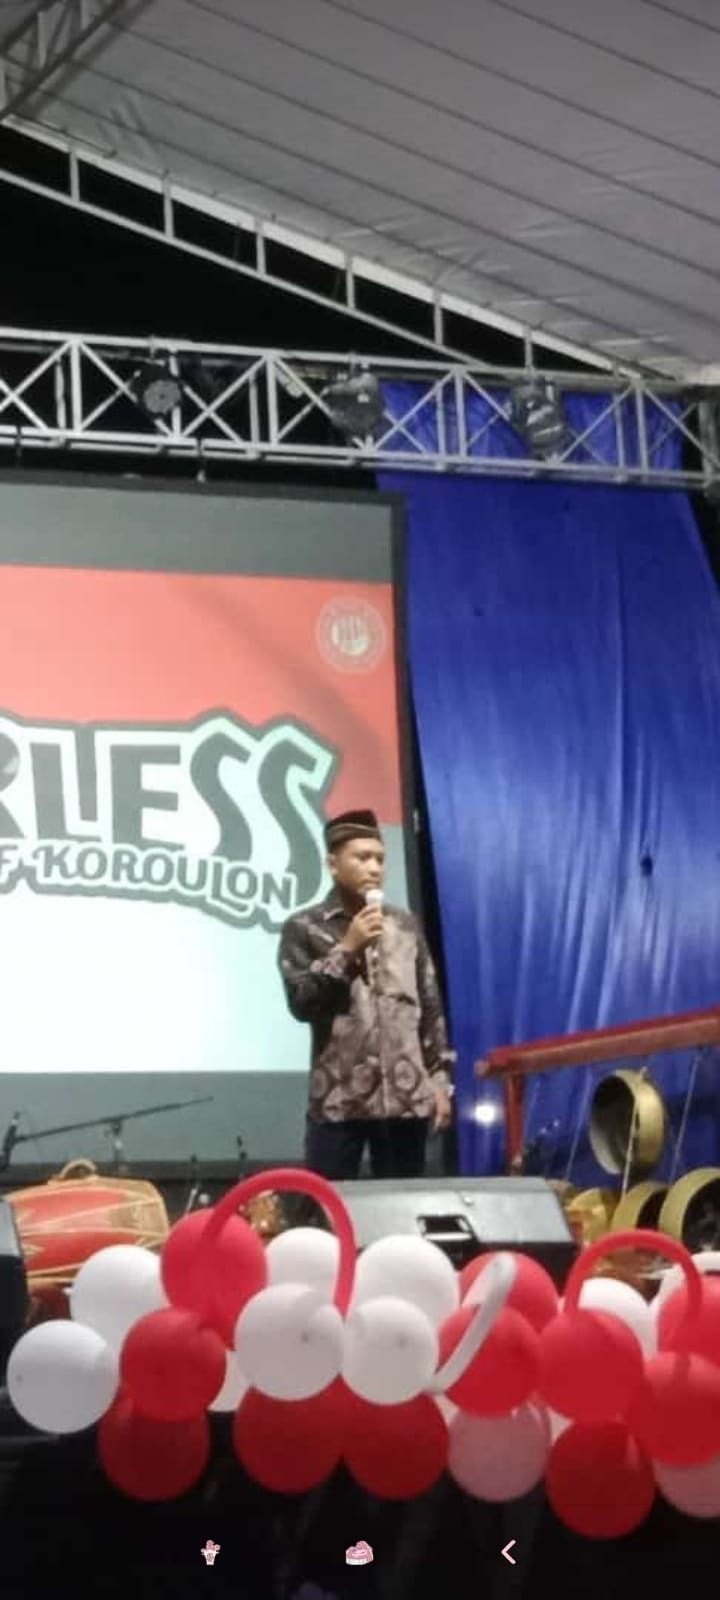 Sambutan Kepala Dusun Koroulon Kidul Dalam rangka Peringatan hari Kemerdekaan Indonesia